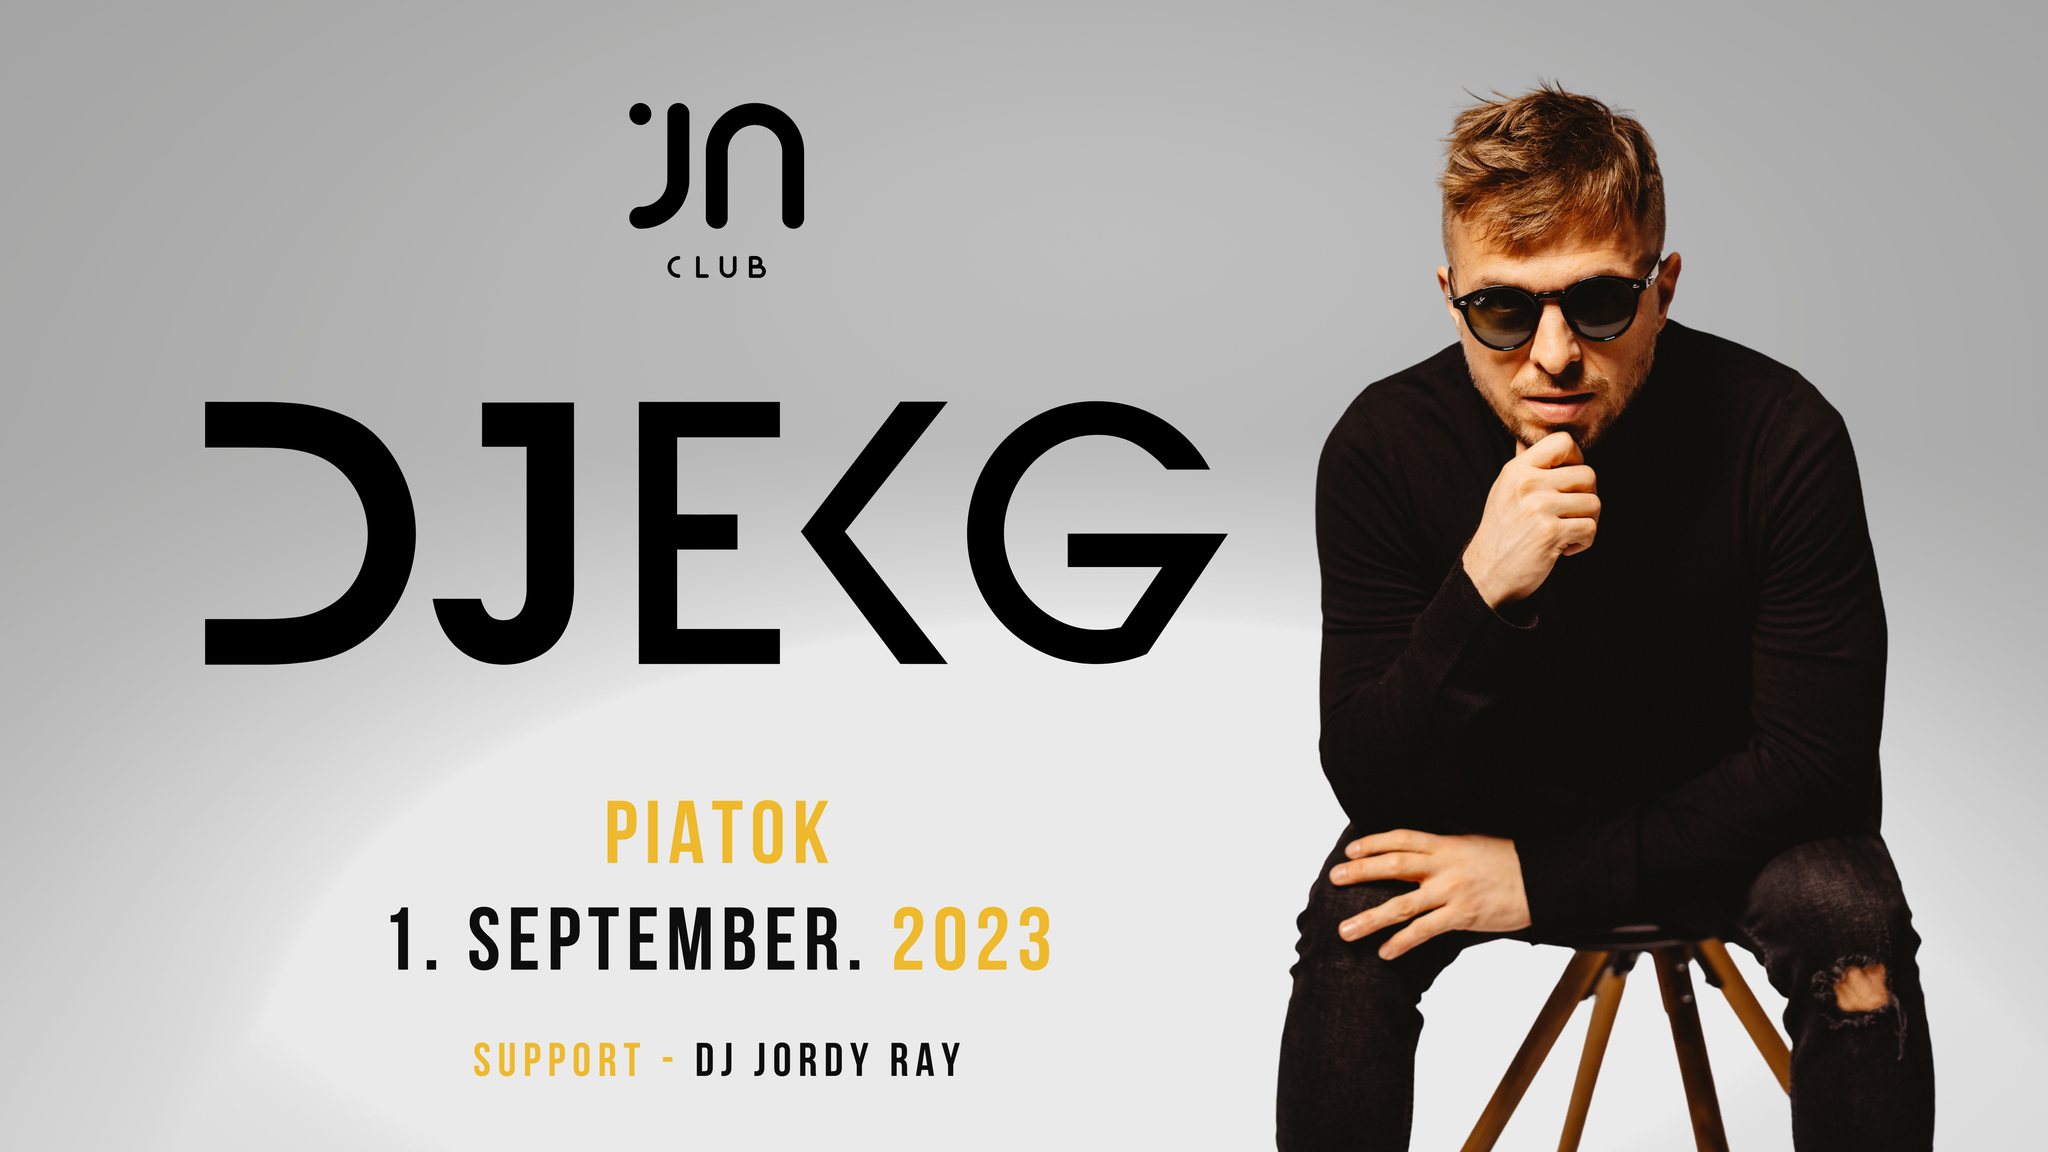 DJ EKG | JANTAR CLUB